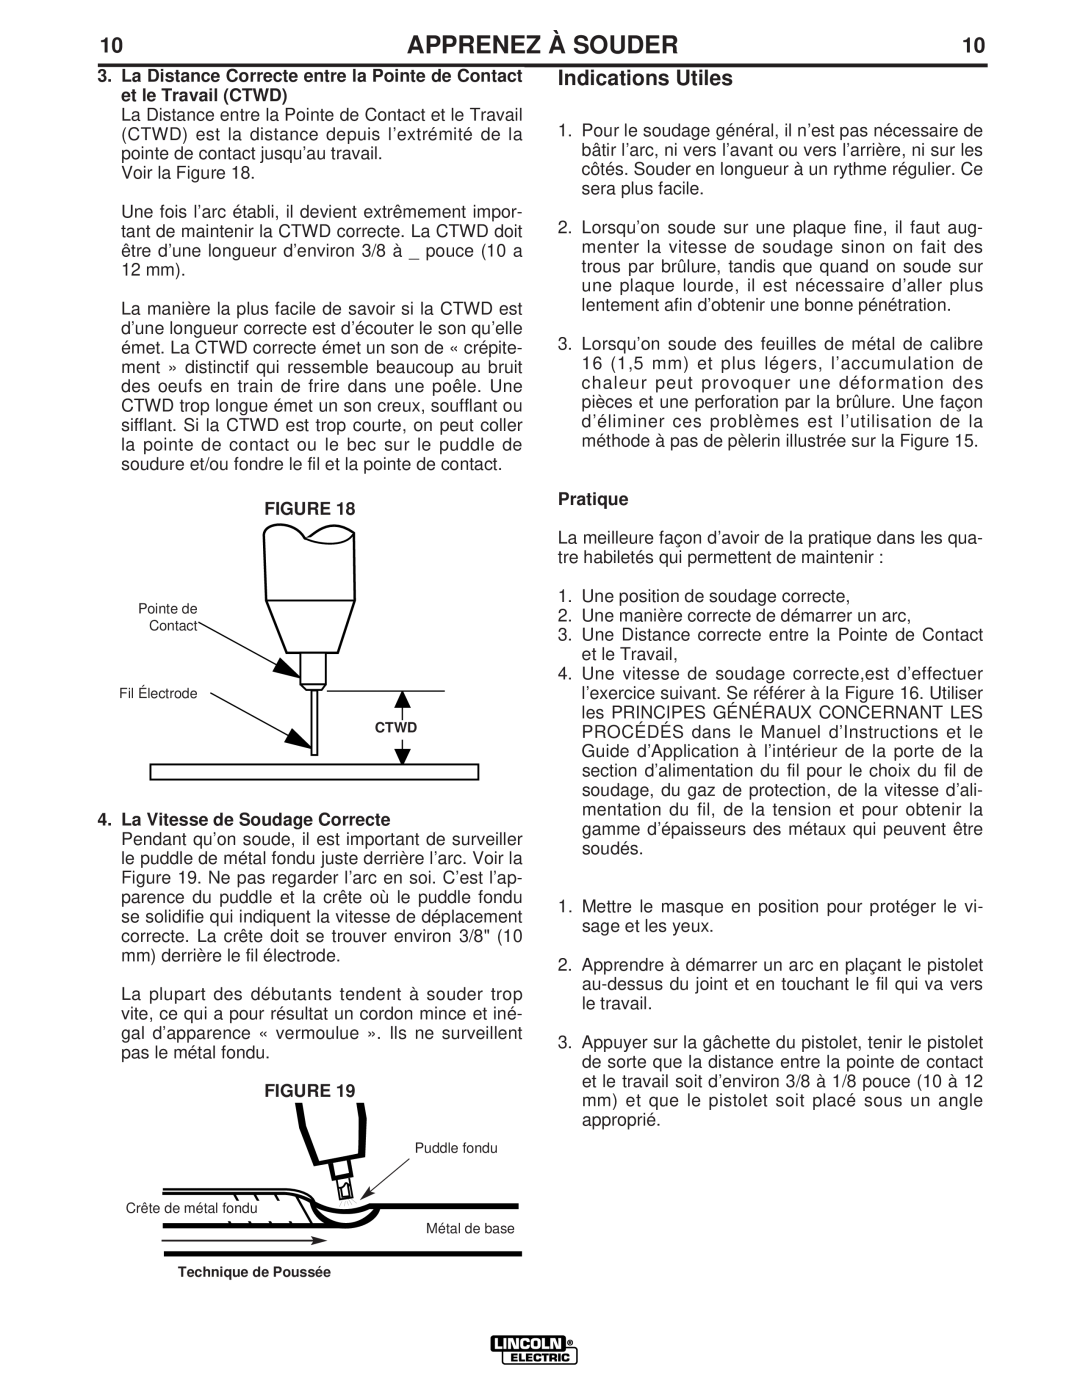 Lincoln Electric LTW1 manual Indications Utiles, La Vitesse de Soudage Correcte, Apprenez À Souder, Pratique 